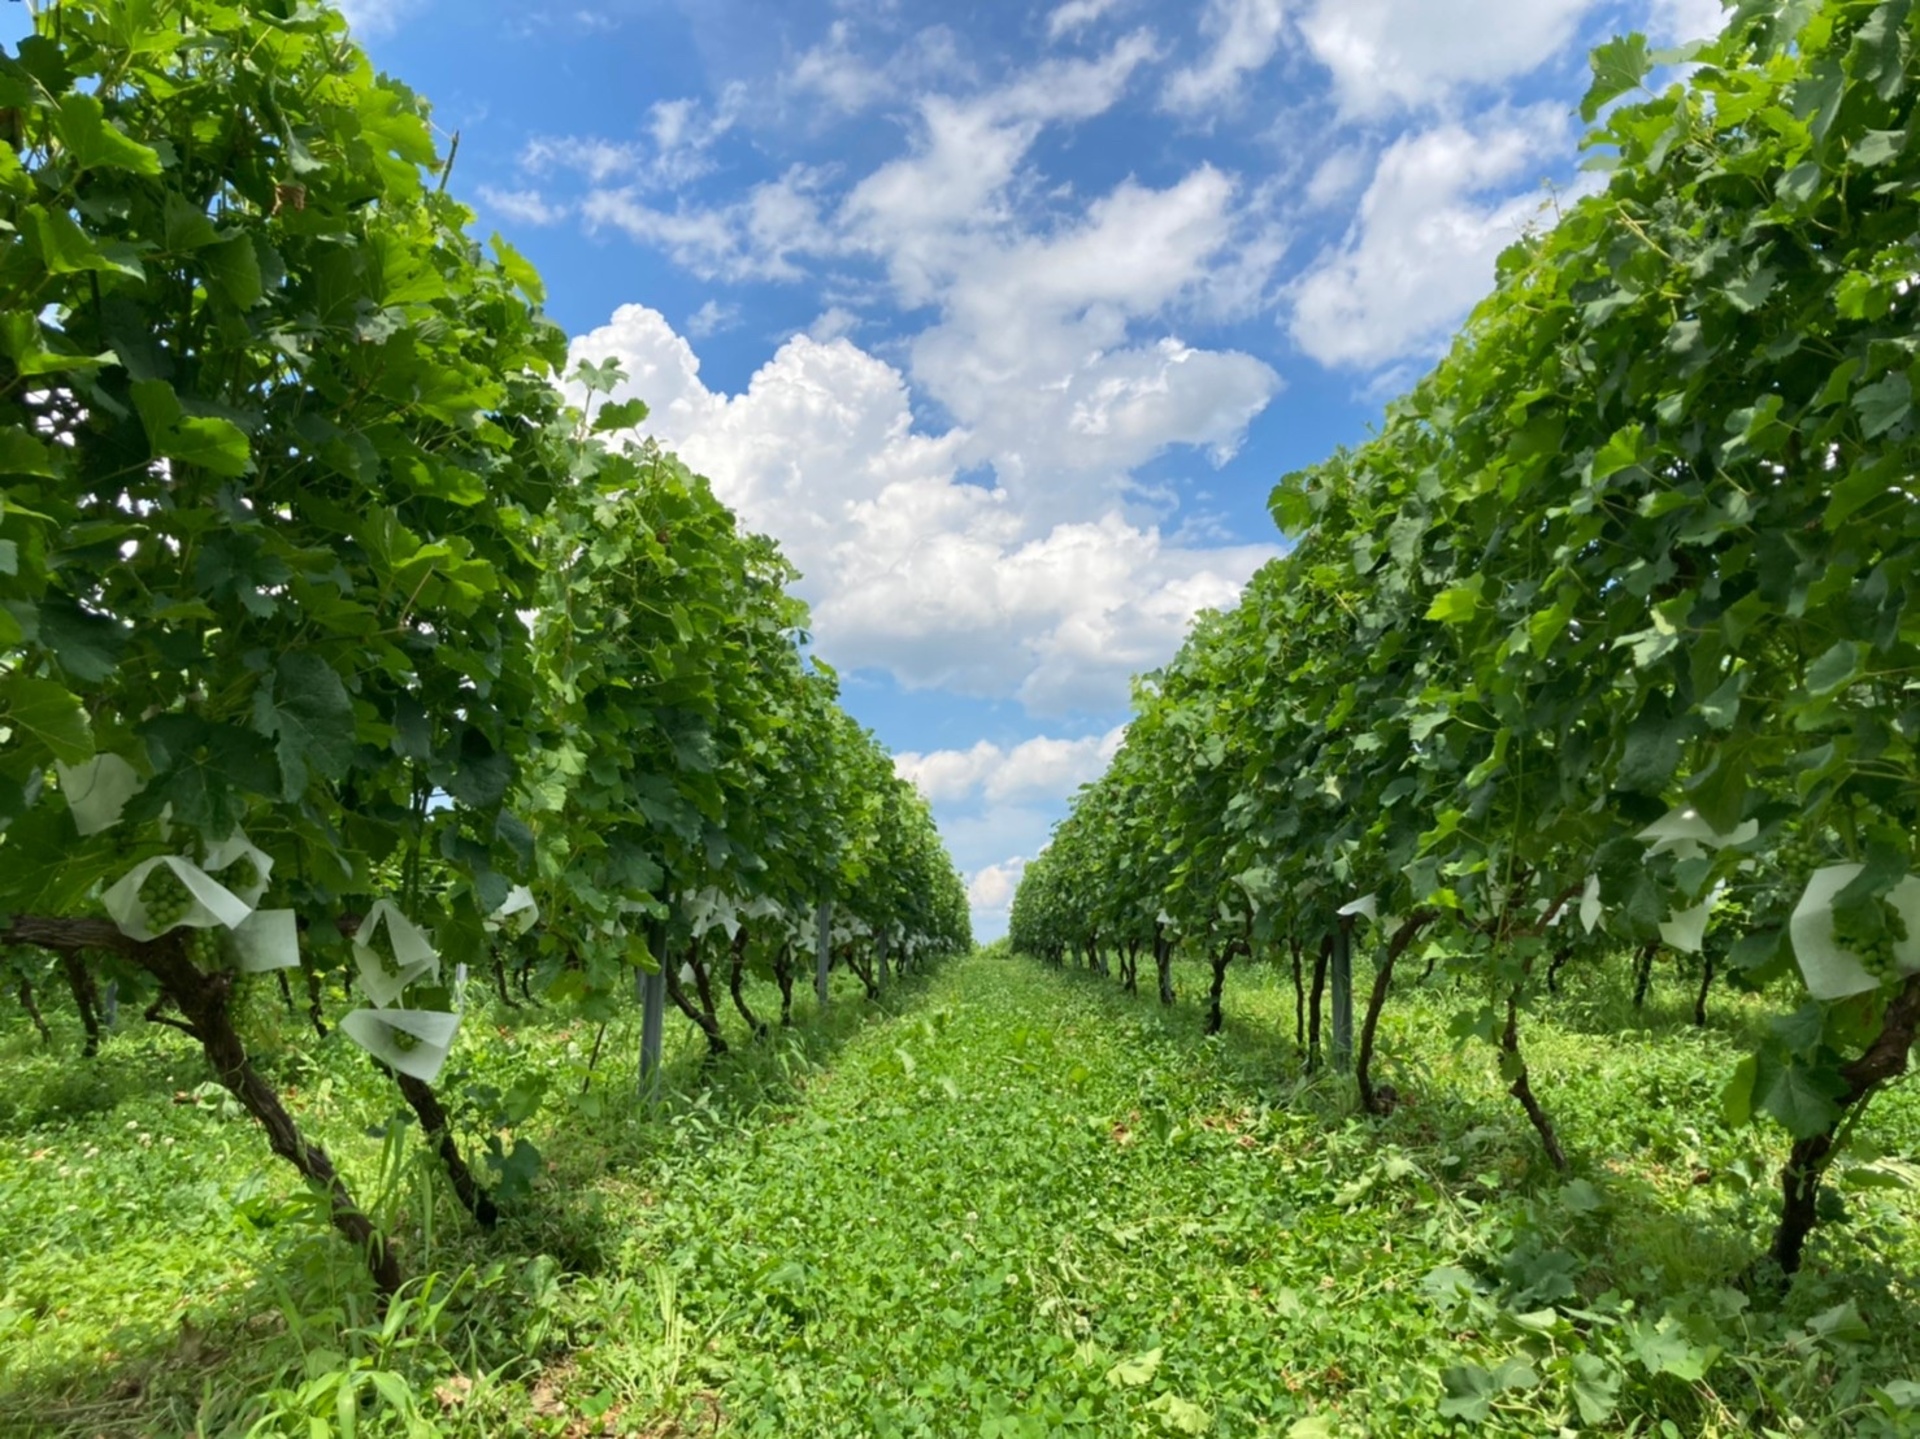 TOYOSHIMA FARM
ワインブドウの栽培